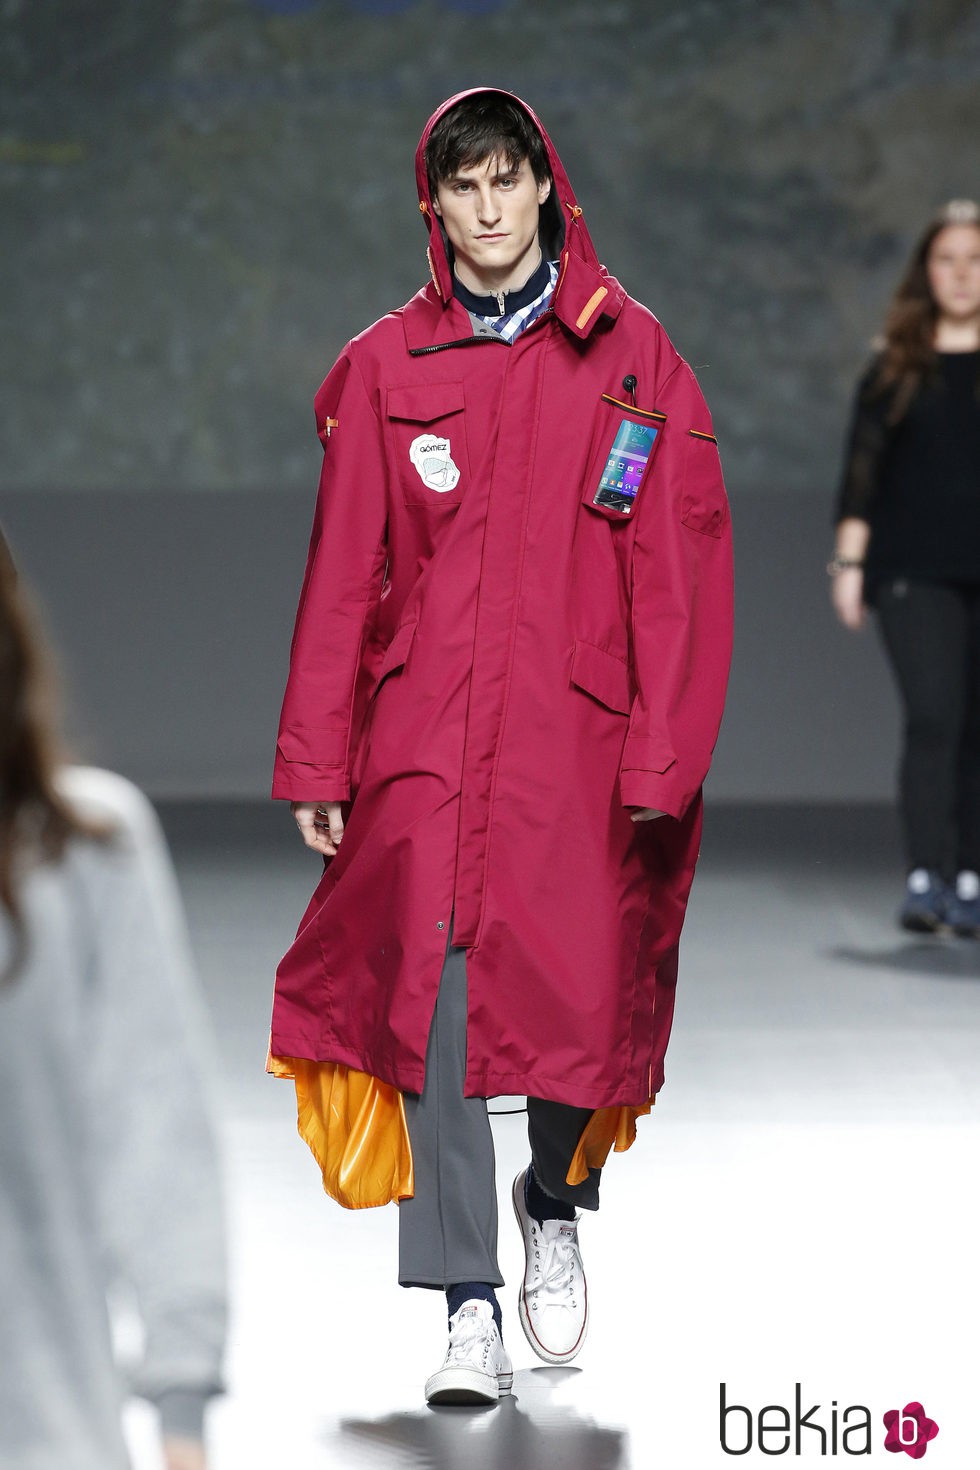 Abrigo con forma de tienda de campaña de Gomez en el Samsung EGO 2015